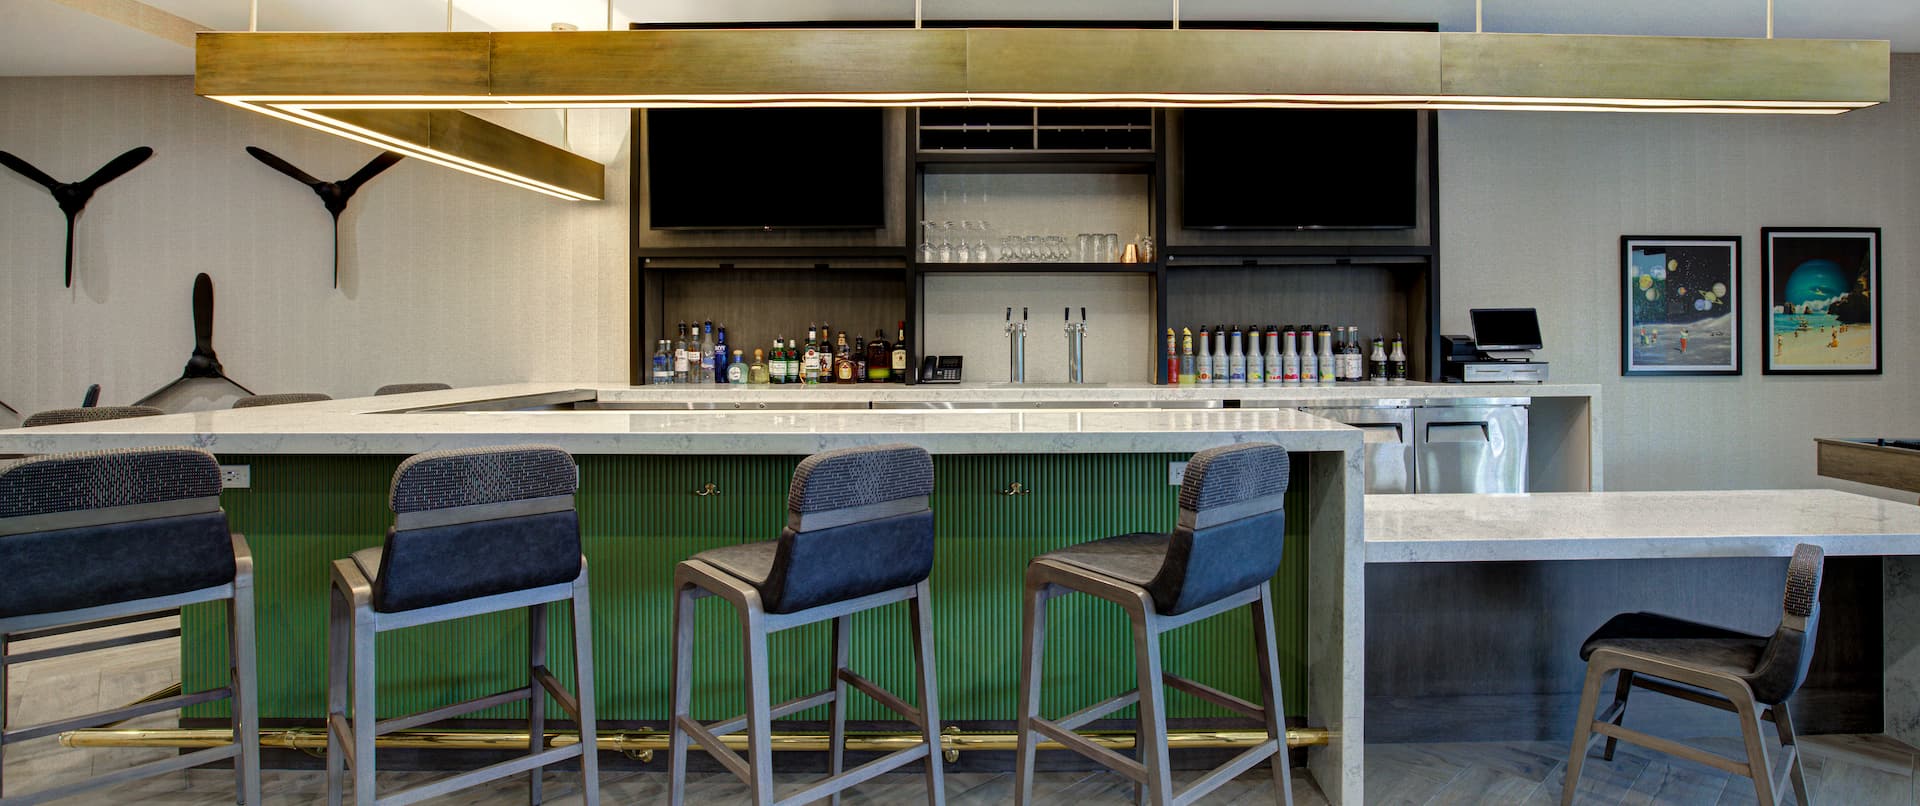 Bar Lounge Counter and Bar Stools